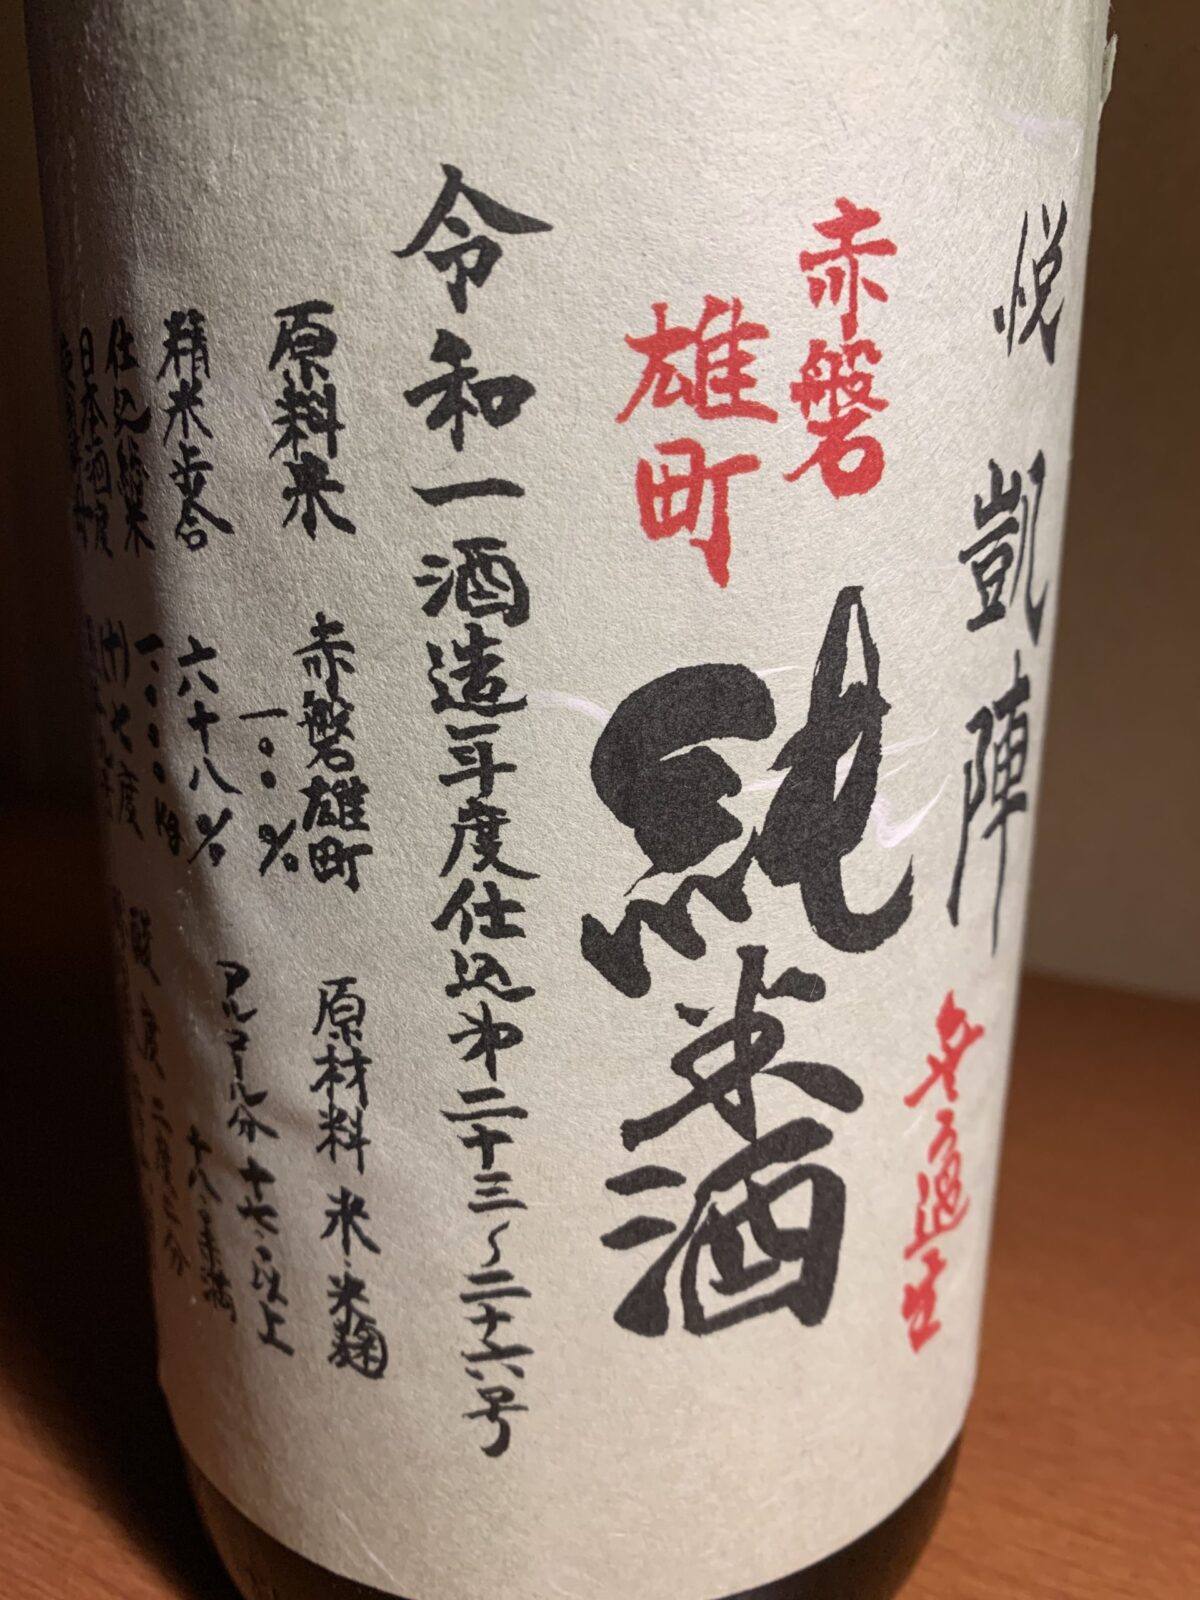 香川の日本酒『悦凱陣赤磐雄町』は雄町らしい芳醇でコクのある味わい